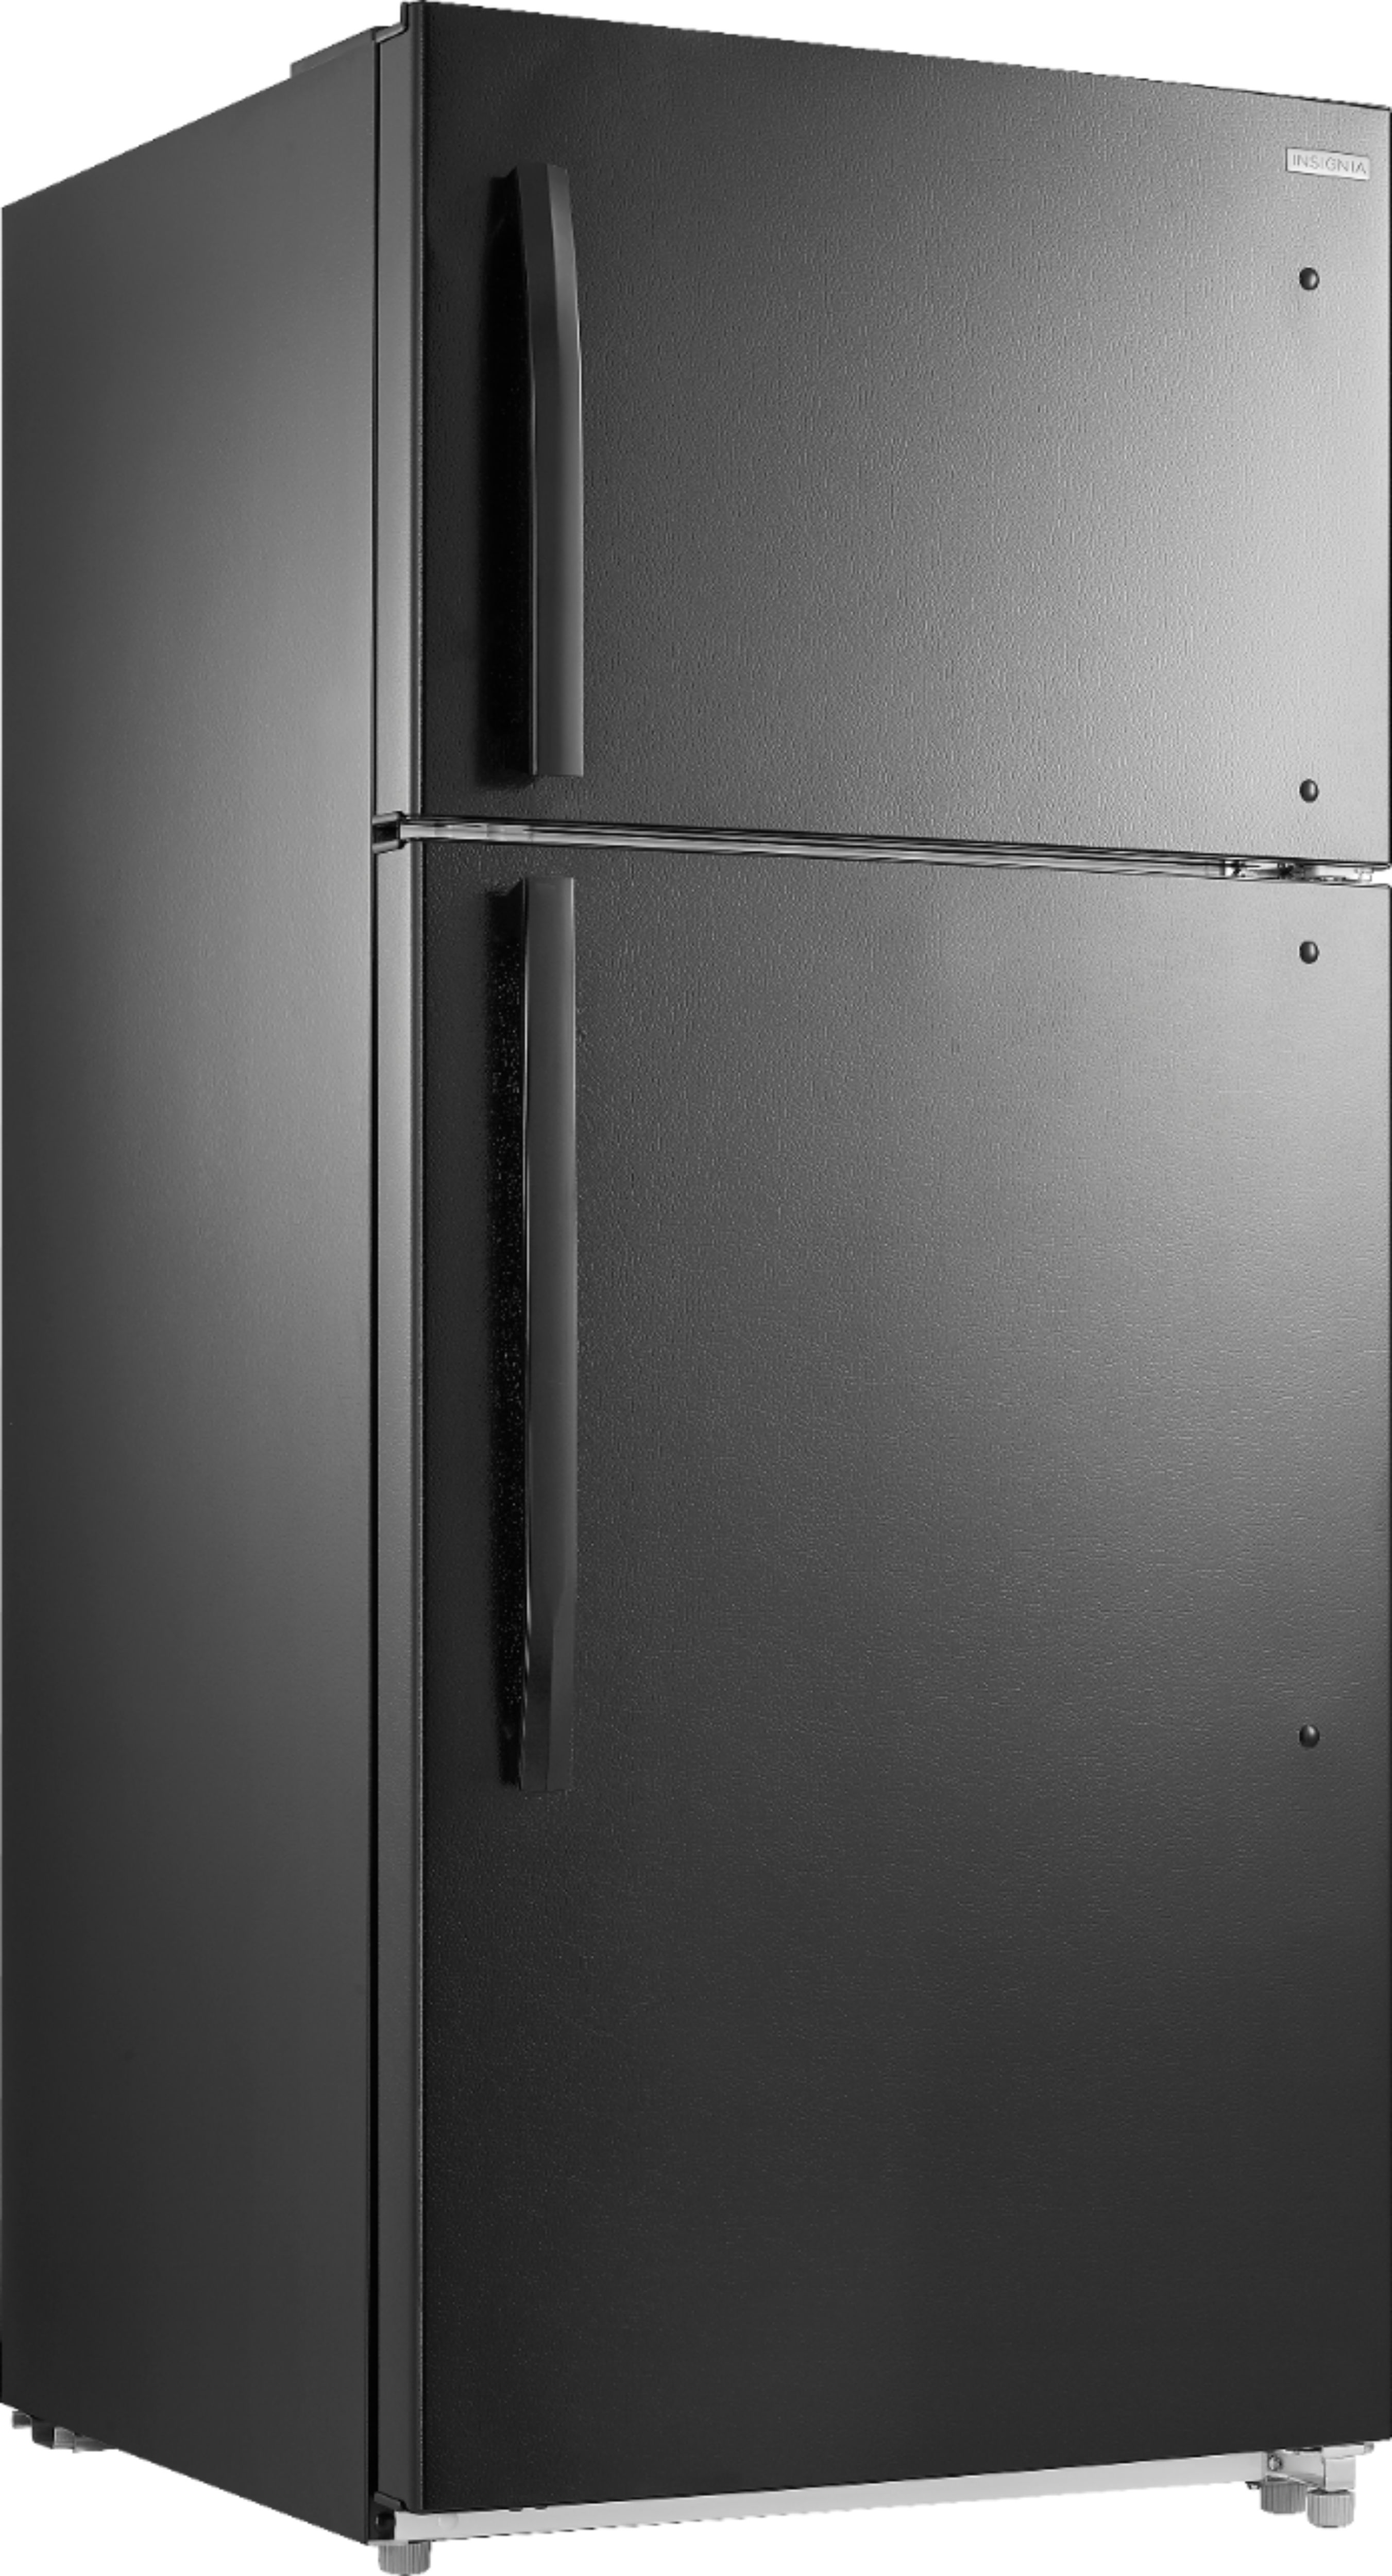 Angle View: Insignia™ - 18.1 Cu. Ft. Top-Freezer Refrigerator - Black